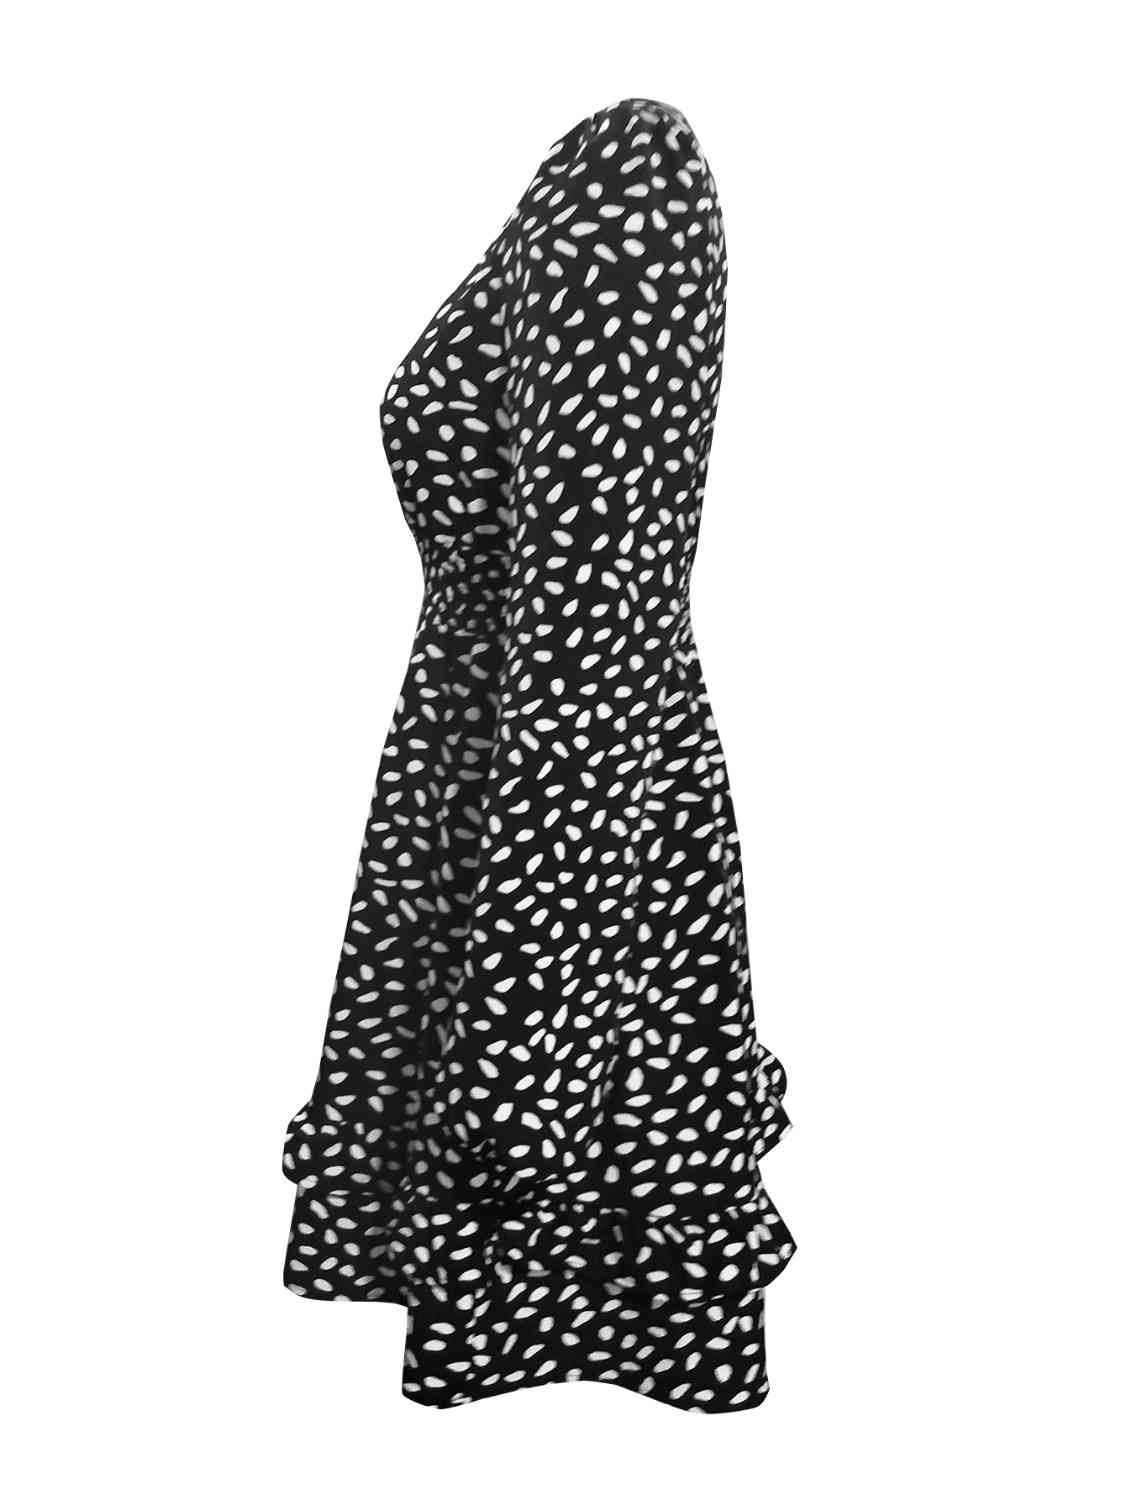 Fashionsarah.com Fashionsarah.com Printed Ruffle Trim Smocked Mini Dress